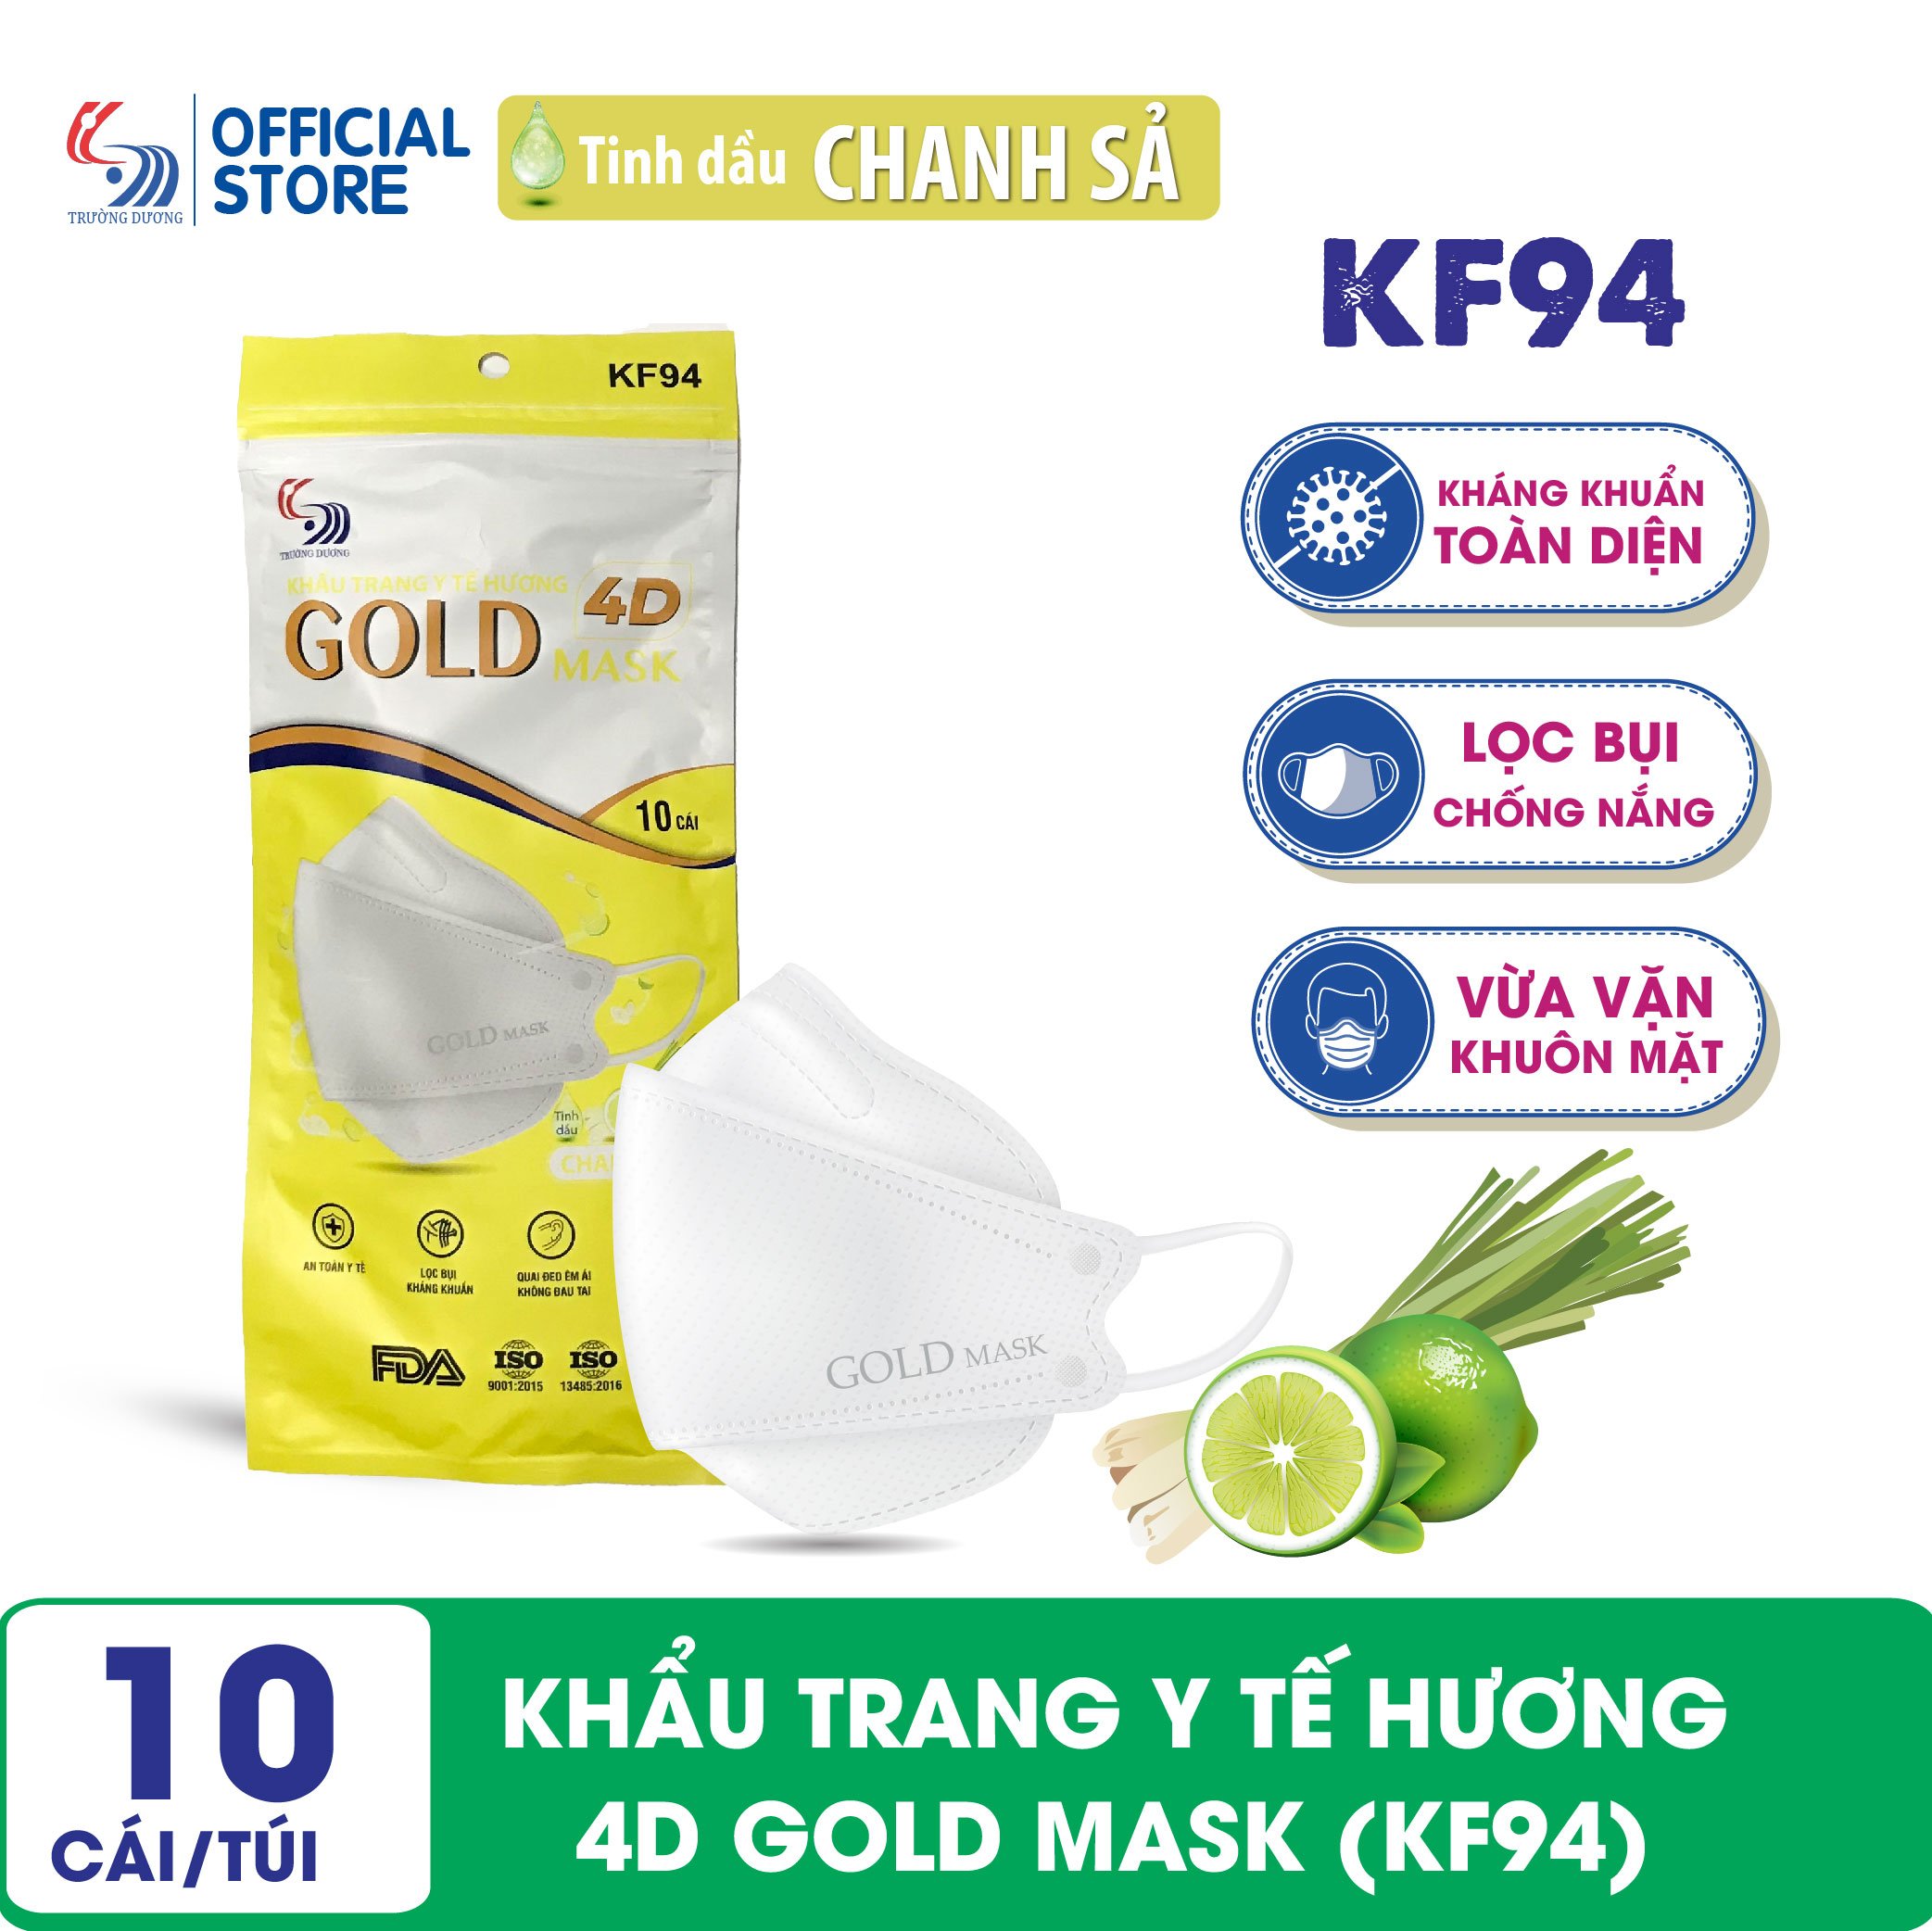 Khẩu trang y tế hương Chanh Sả 4D Gold Mask (KF94) - Túi 10 chiếc